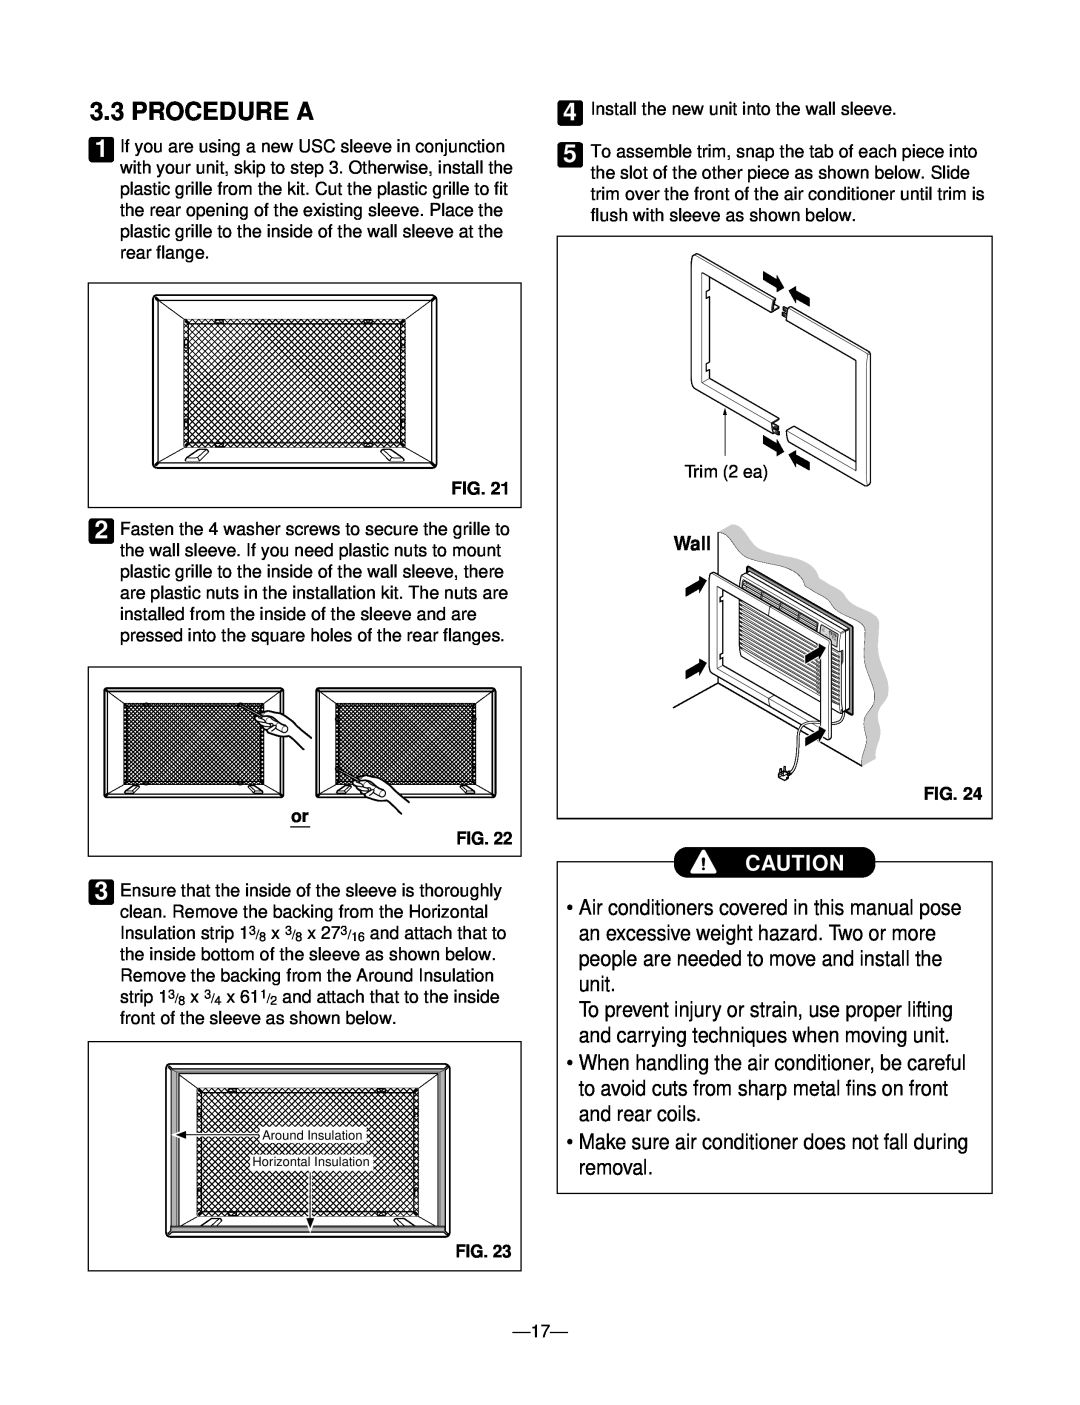 Heat Controller BDE-103, BD-101, BD-123, BDE-123, BD-81 manual Procedure A, Wall 